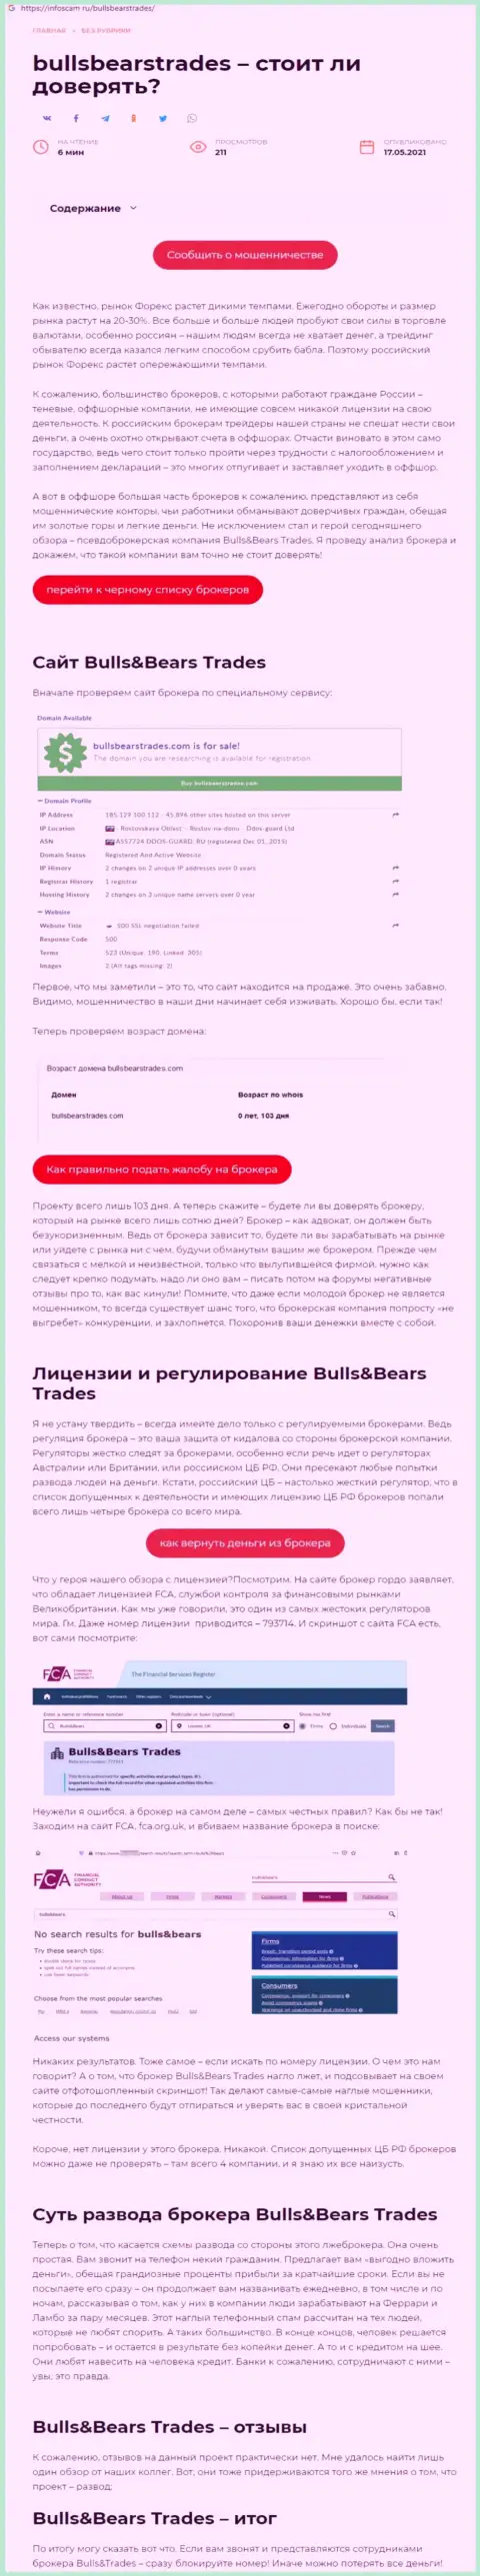 BullsBears Trades - это ВОРЮГА !!! Схемы одурачивания (обзор)